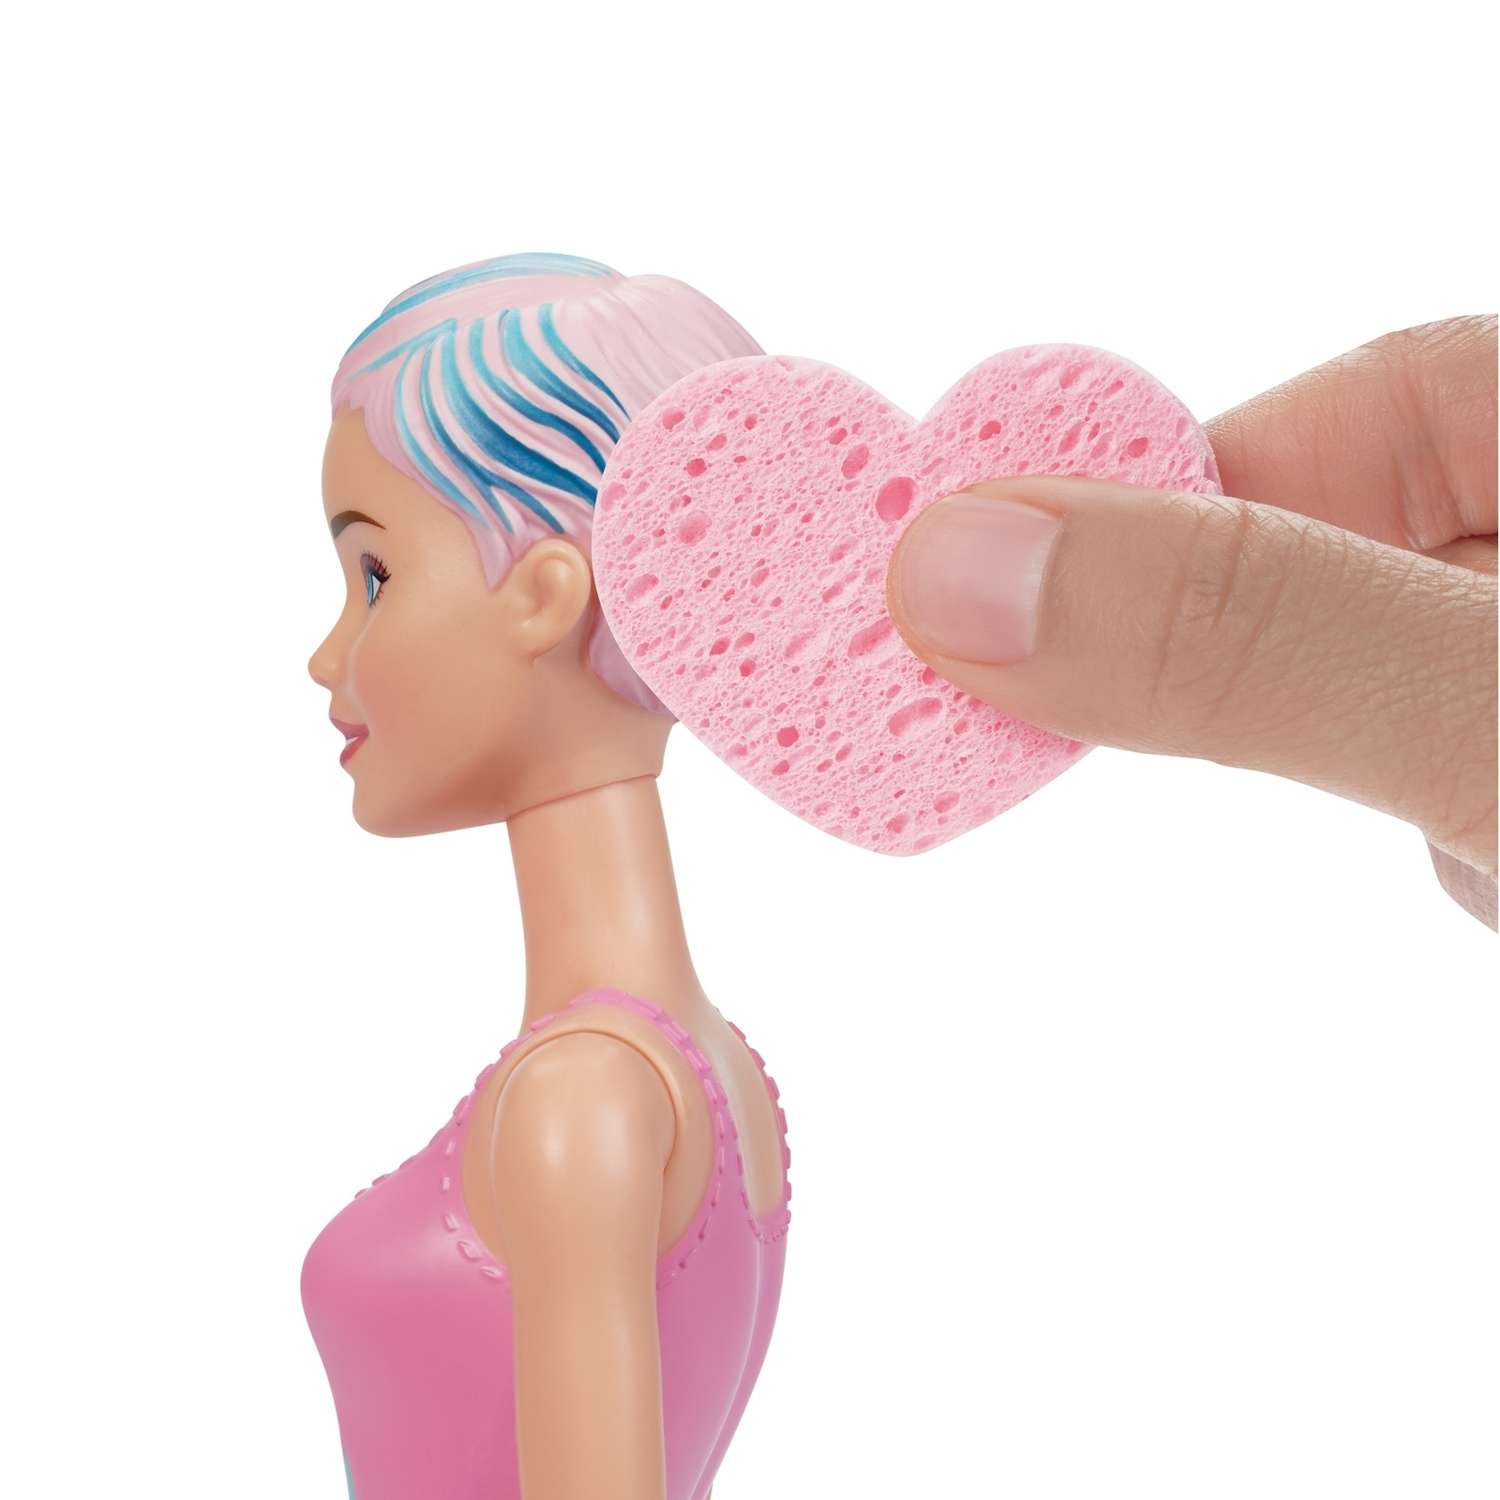 Кукла Barbie в непрозрачной упаковке (Сюрприз) GMT48 GMT48 - фото 3